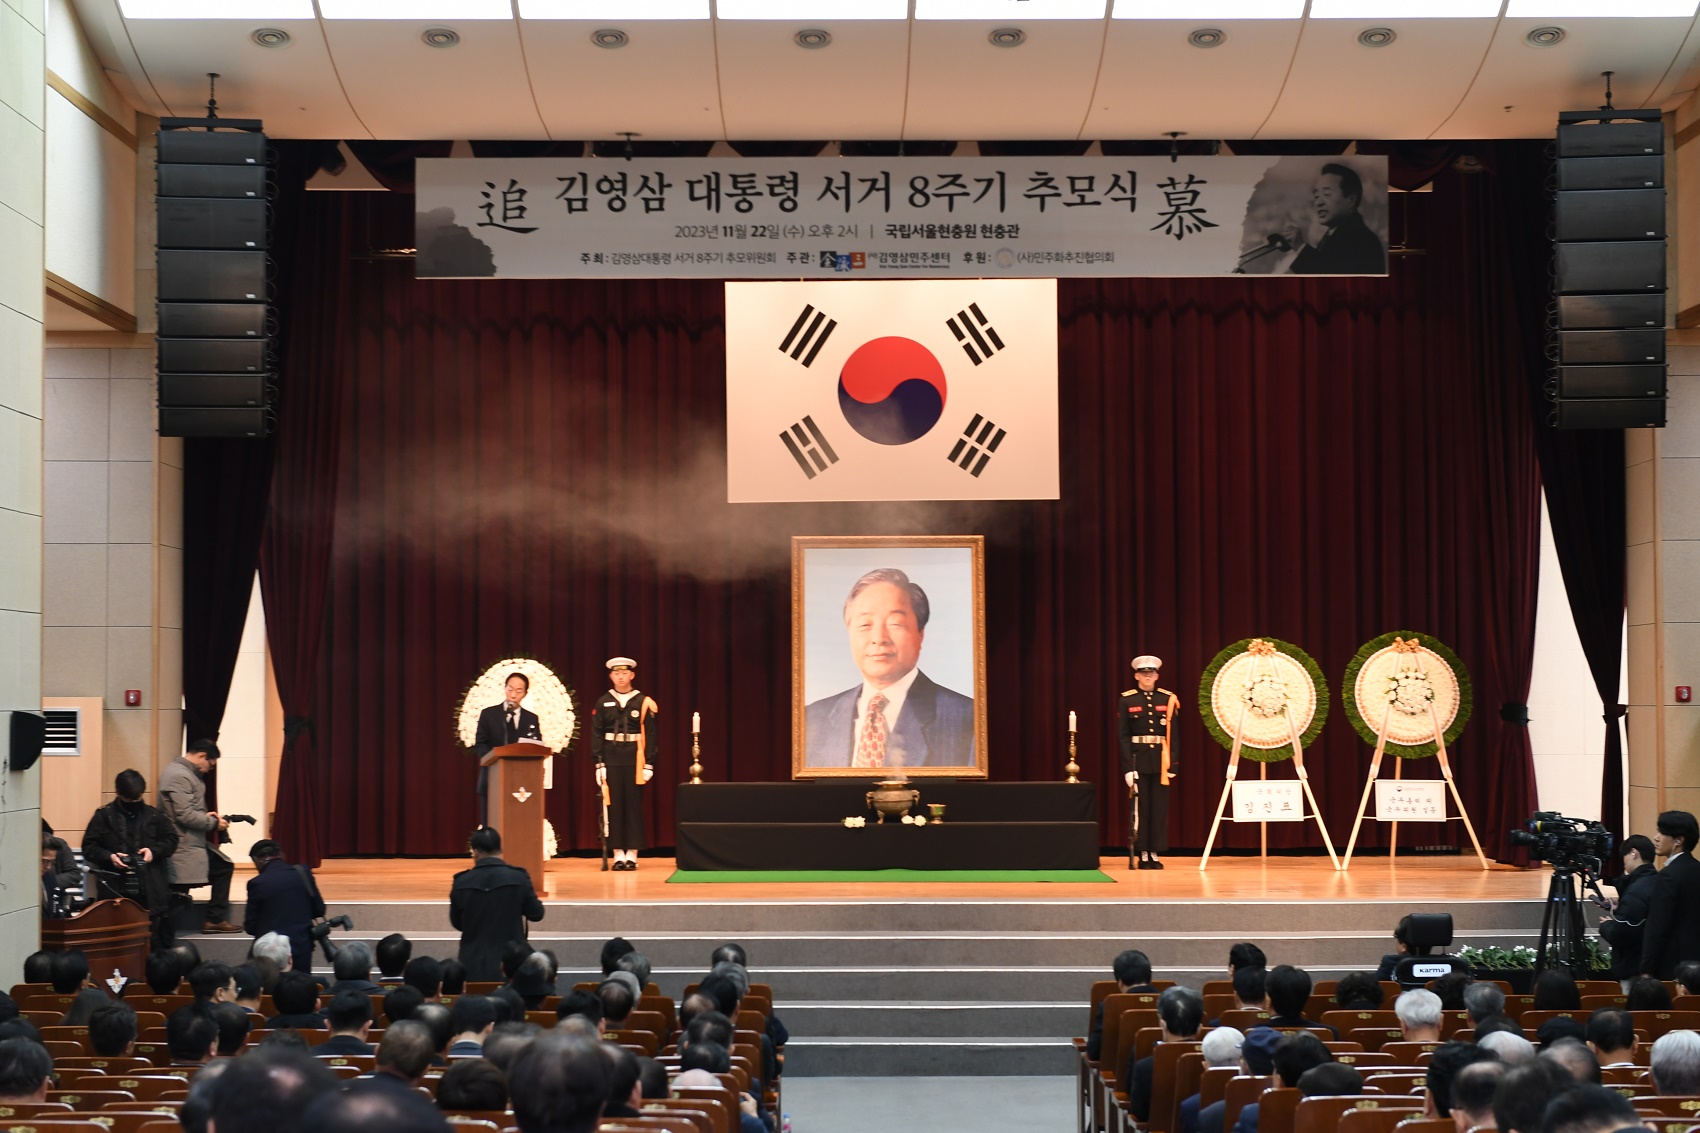 김영삼 전 대통령 8주기 추도식 (2023. 11. 22.) 첨부 이미지